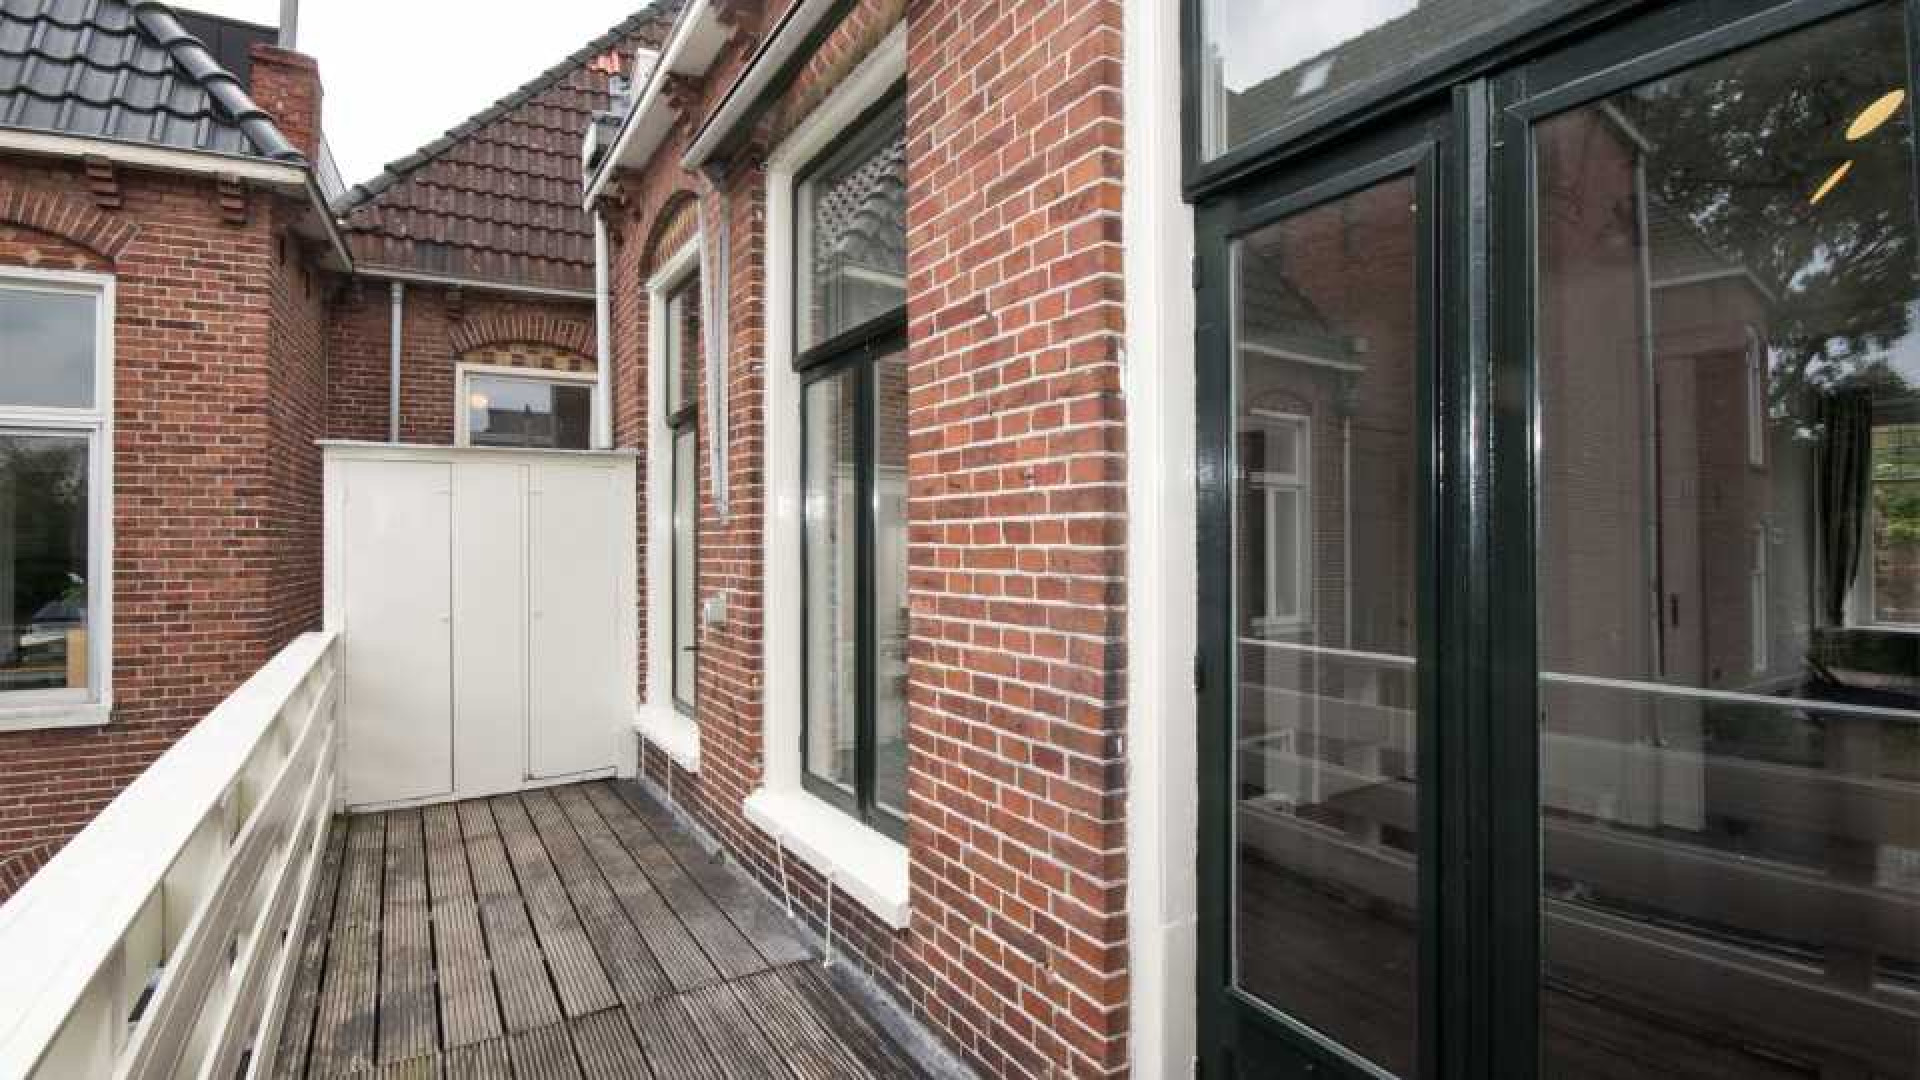 Victoria Koblenko en haar vriend Levchenko zetten hun dubbele bovenhuis in Groningen te koop. Zie foto's